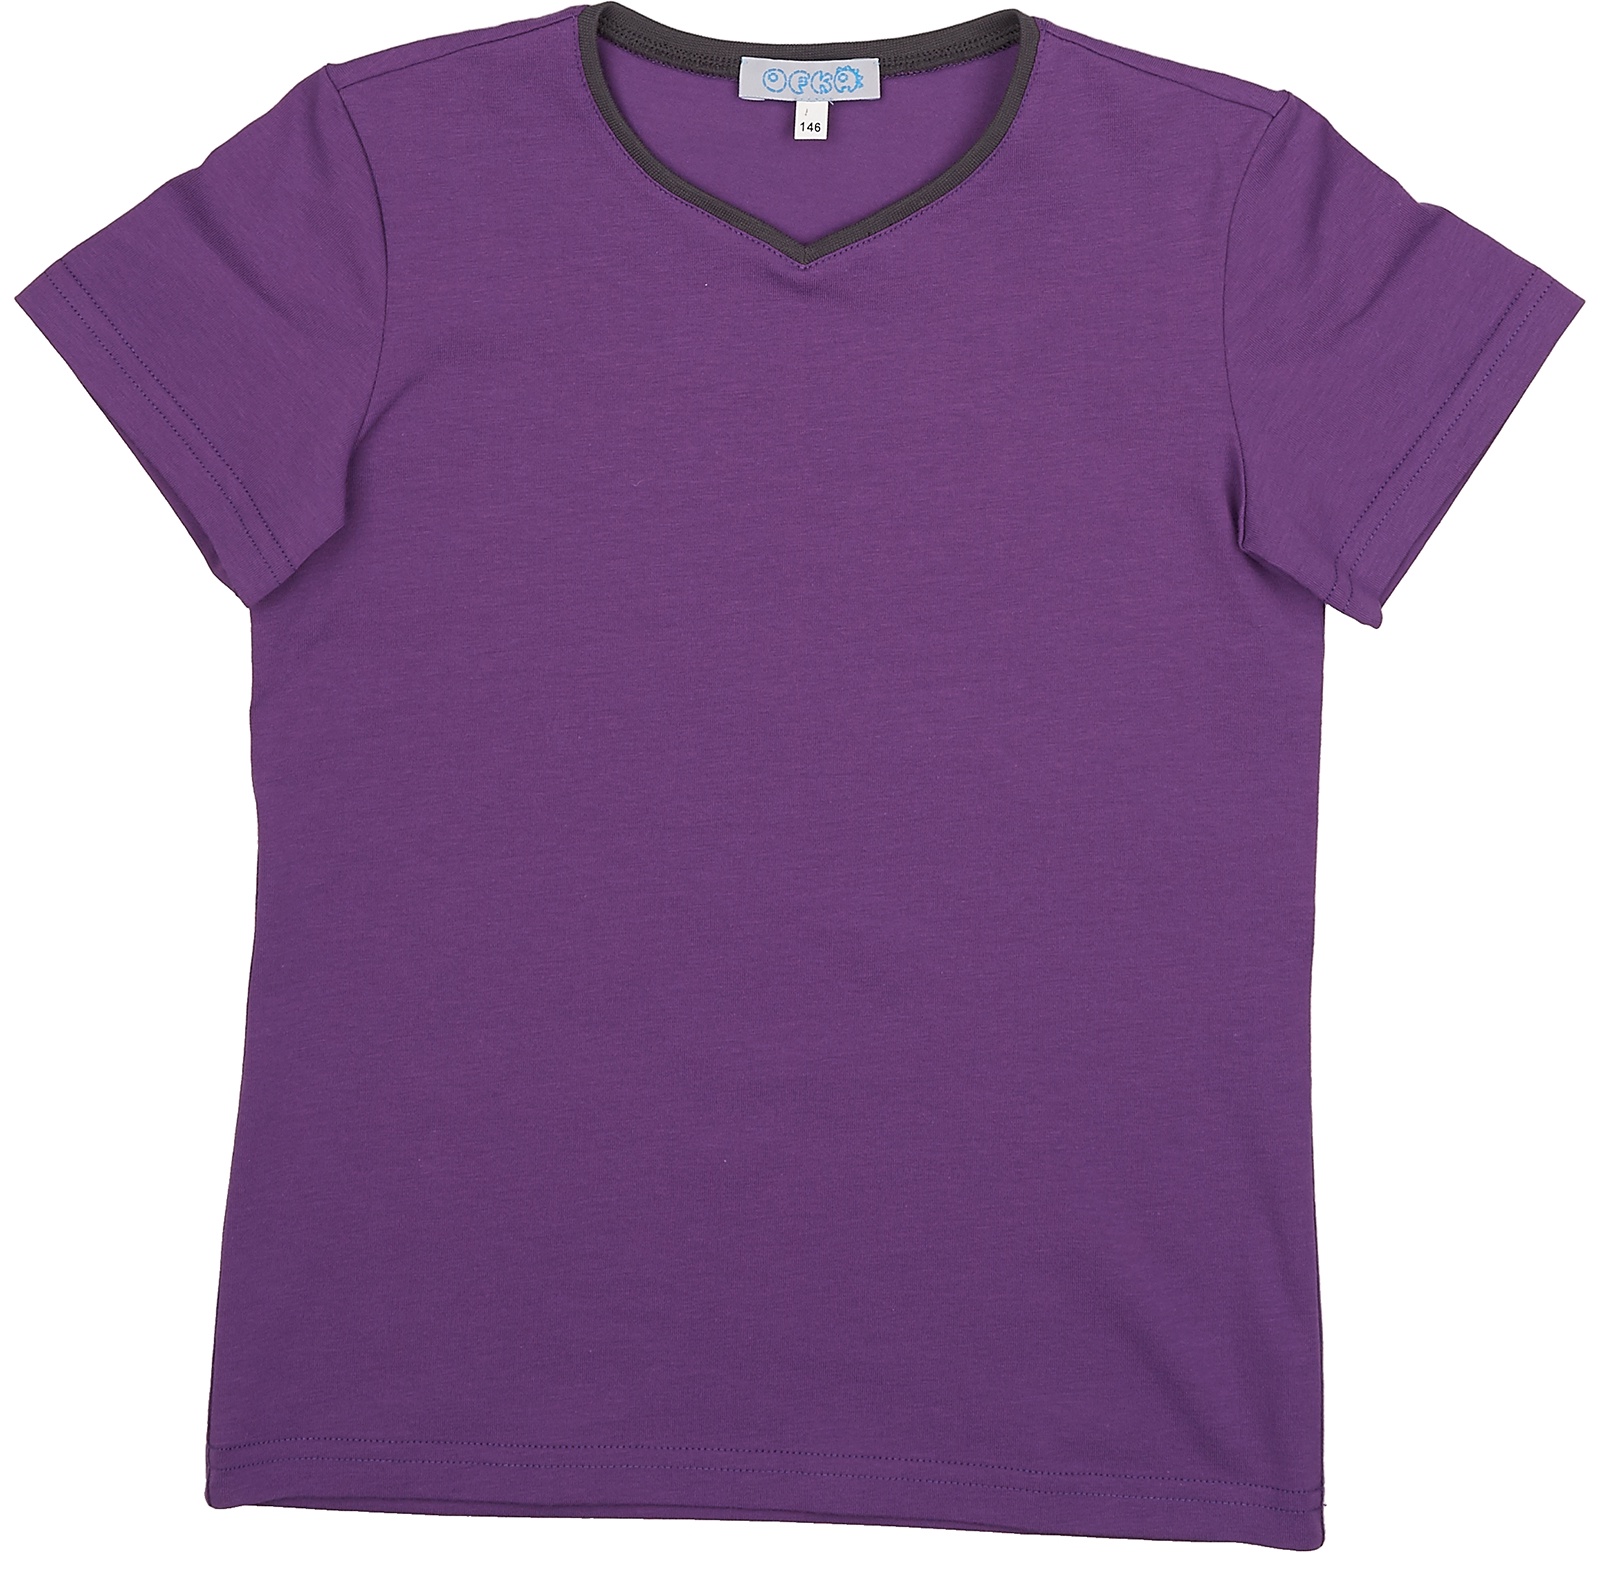 Футболка фиолетовая купить. Фиолетовая футболка. Фиолетовая майка. Сиреневая футболка. Футболка однотонная.